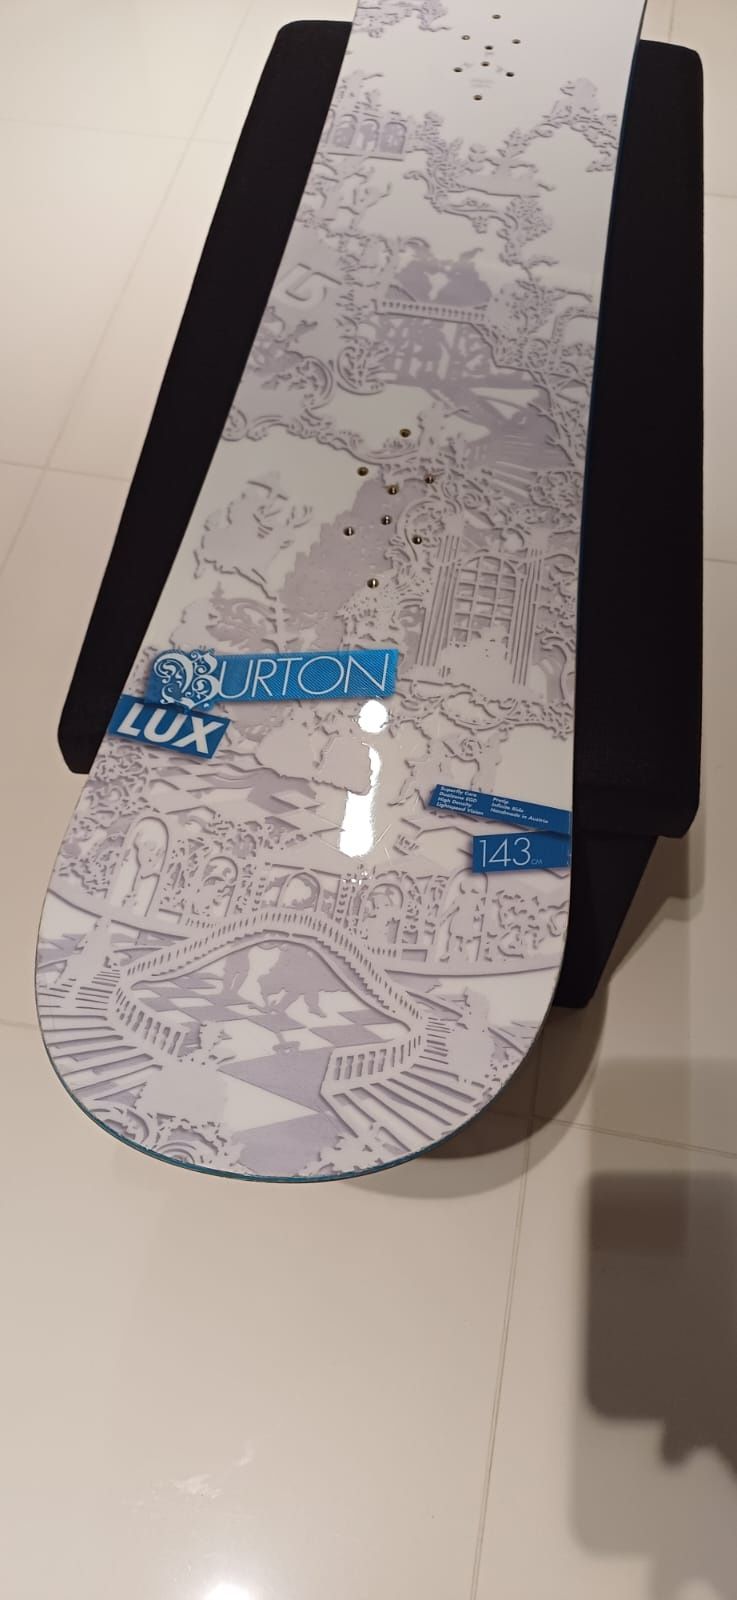 Burton Lux Deska snowboardowa 143cm